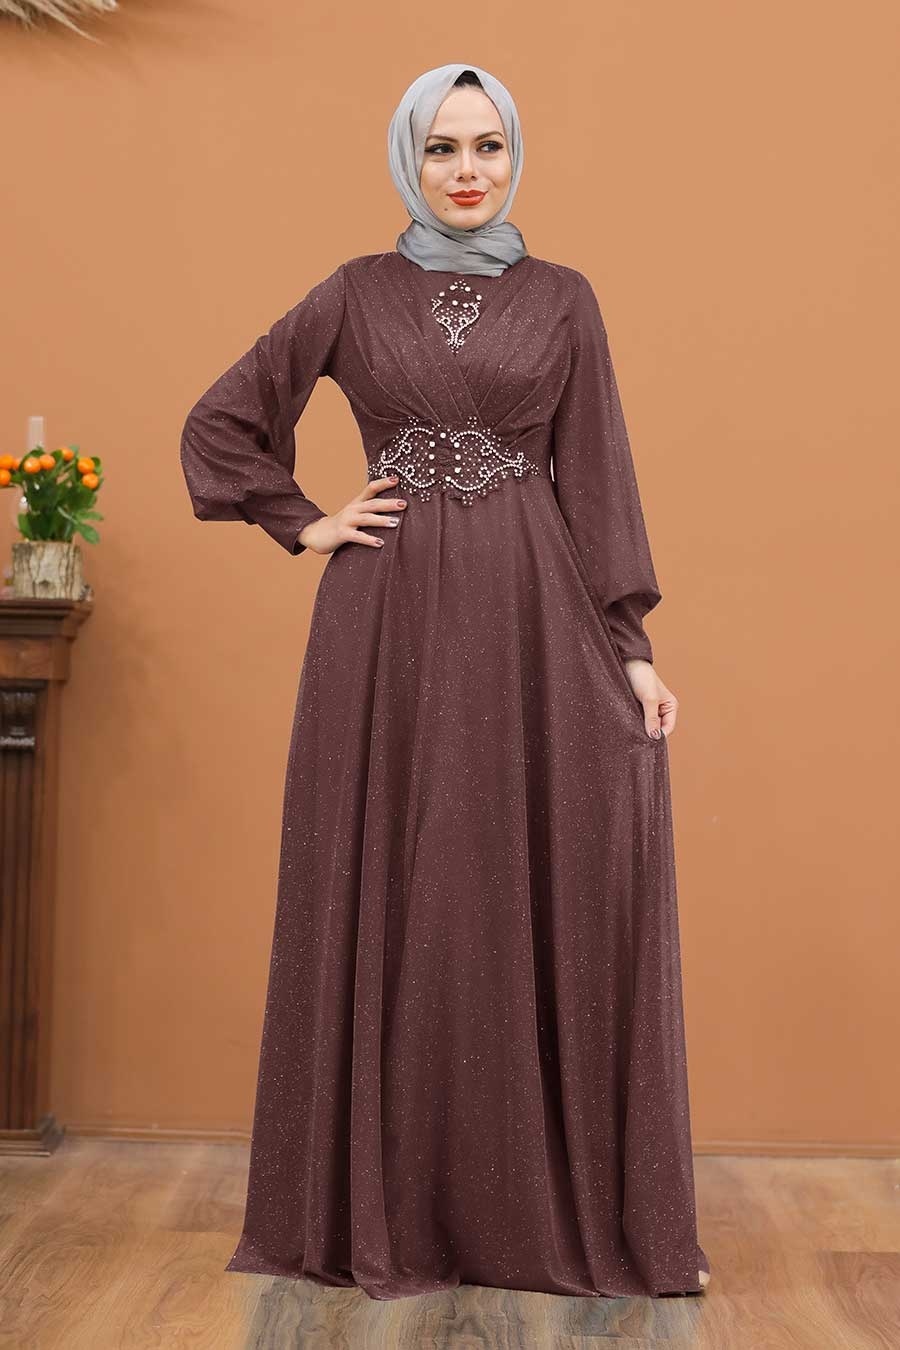 Tesettürlü Abiye Elbise - Simli Koyu Gül Kurusu Tesettür Abiye Elbise 50151KGK